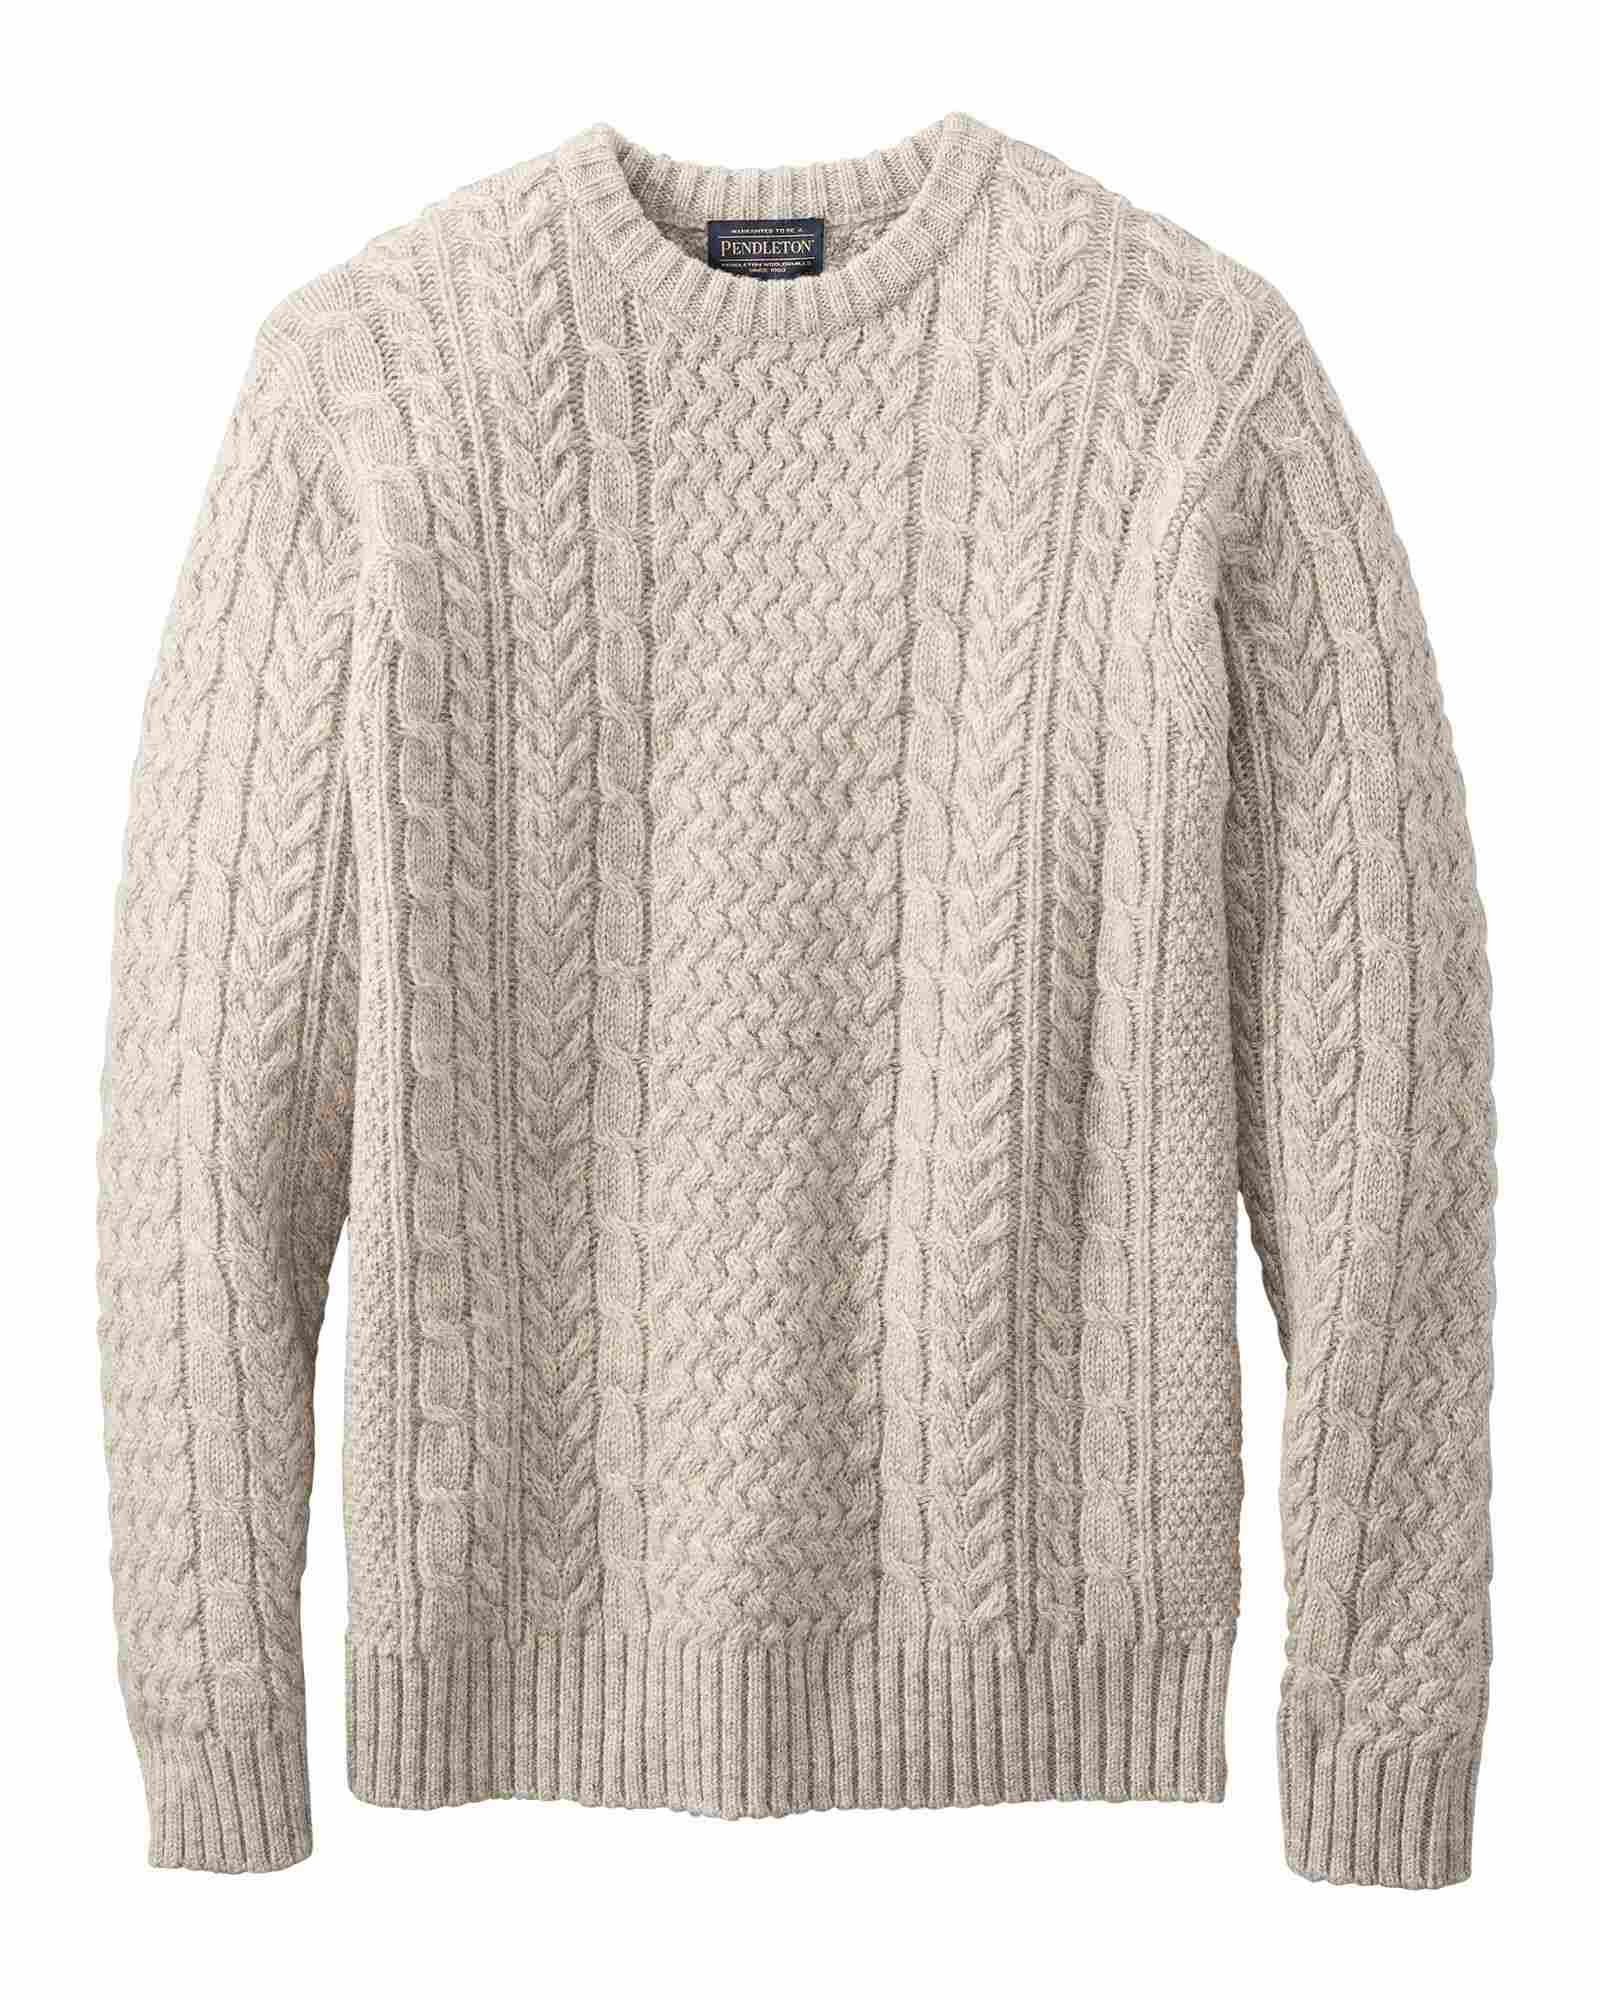  Shetland Fisherman Sweater : Oat Heather